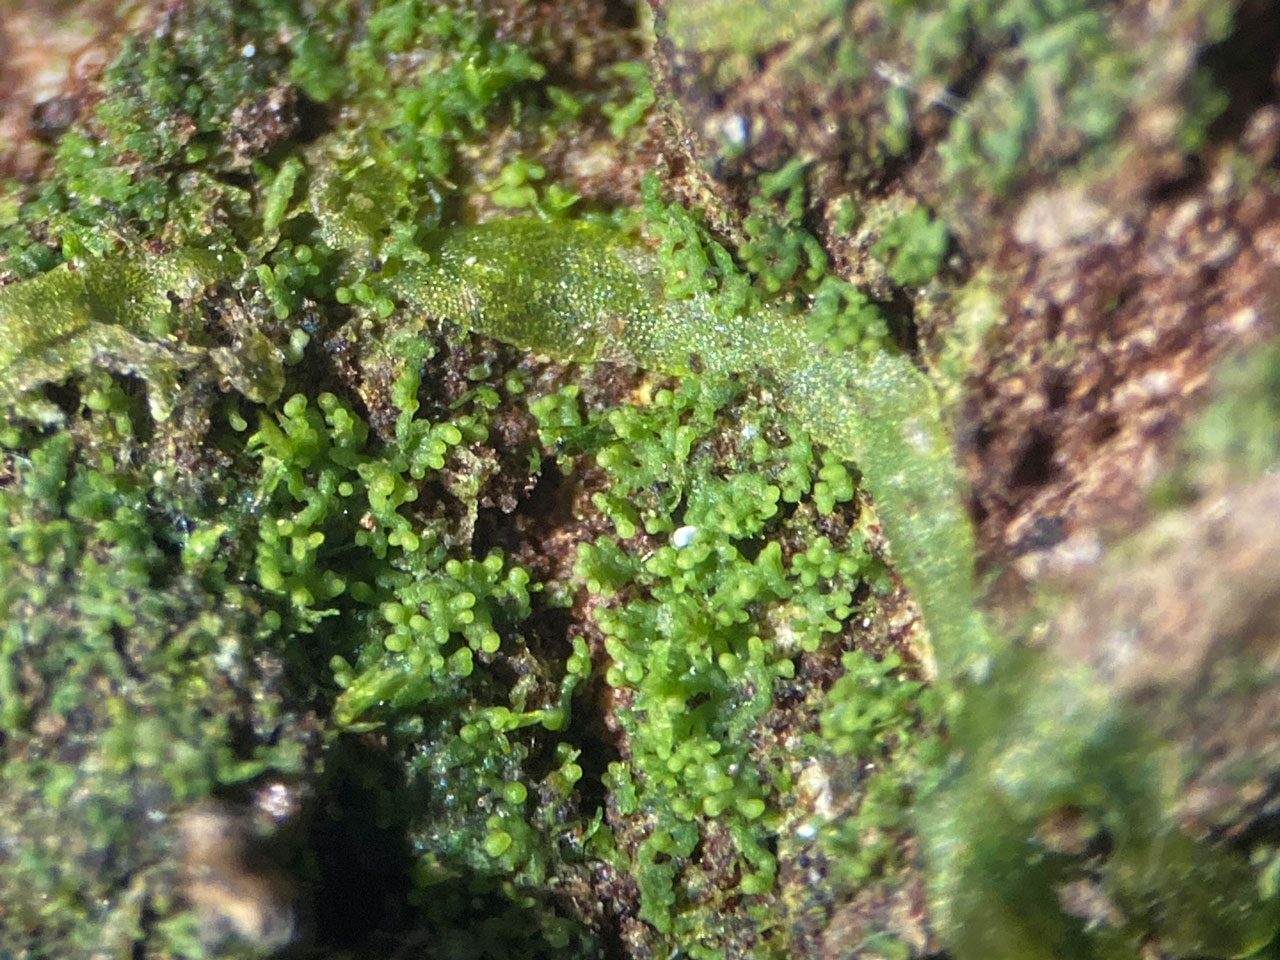 Agonimia octospora, wet, Ashurst Wood, New Forest